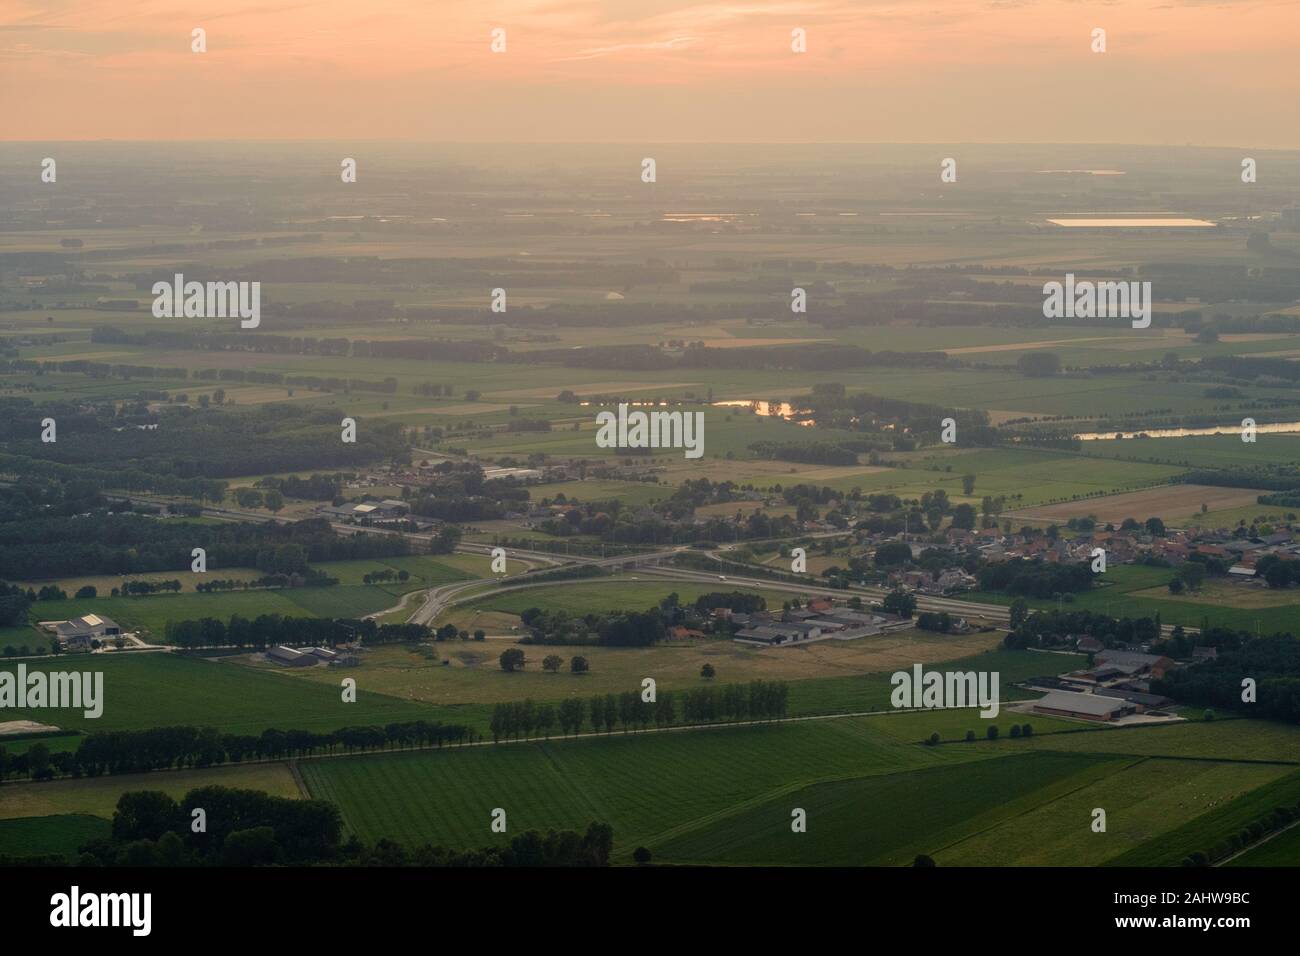 Ein Luftbild zeigt die Autobahn Ausfahrt von der E 34 bei Moerbeke, eine Gemeinde in der belgischen Provinz East-Flander mit ländlicher Umgebung.. Stockfoto